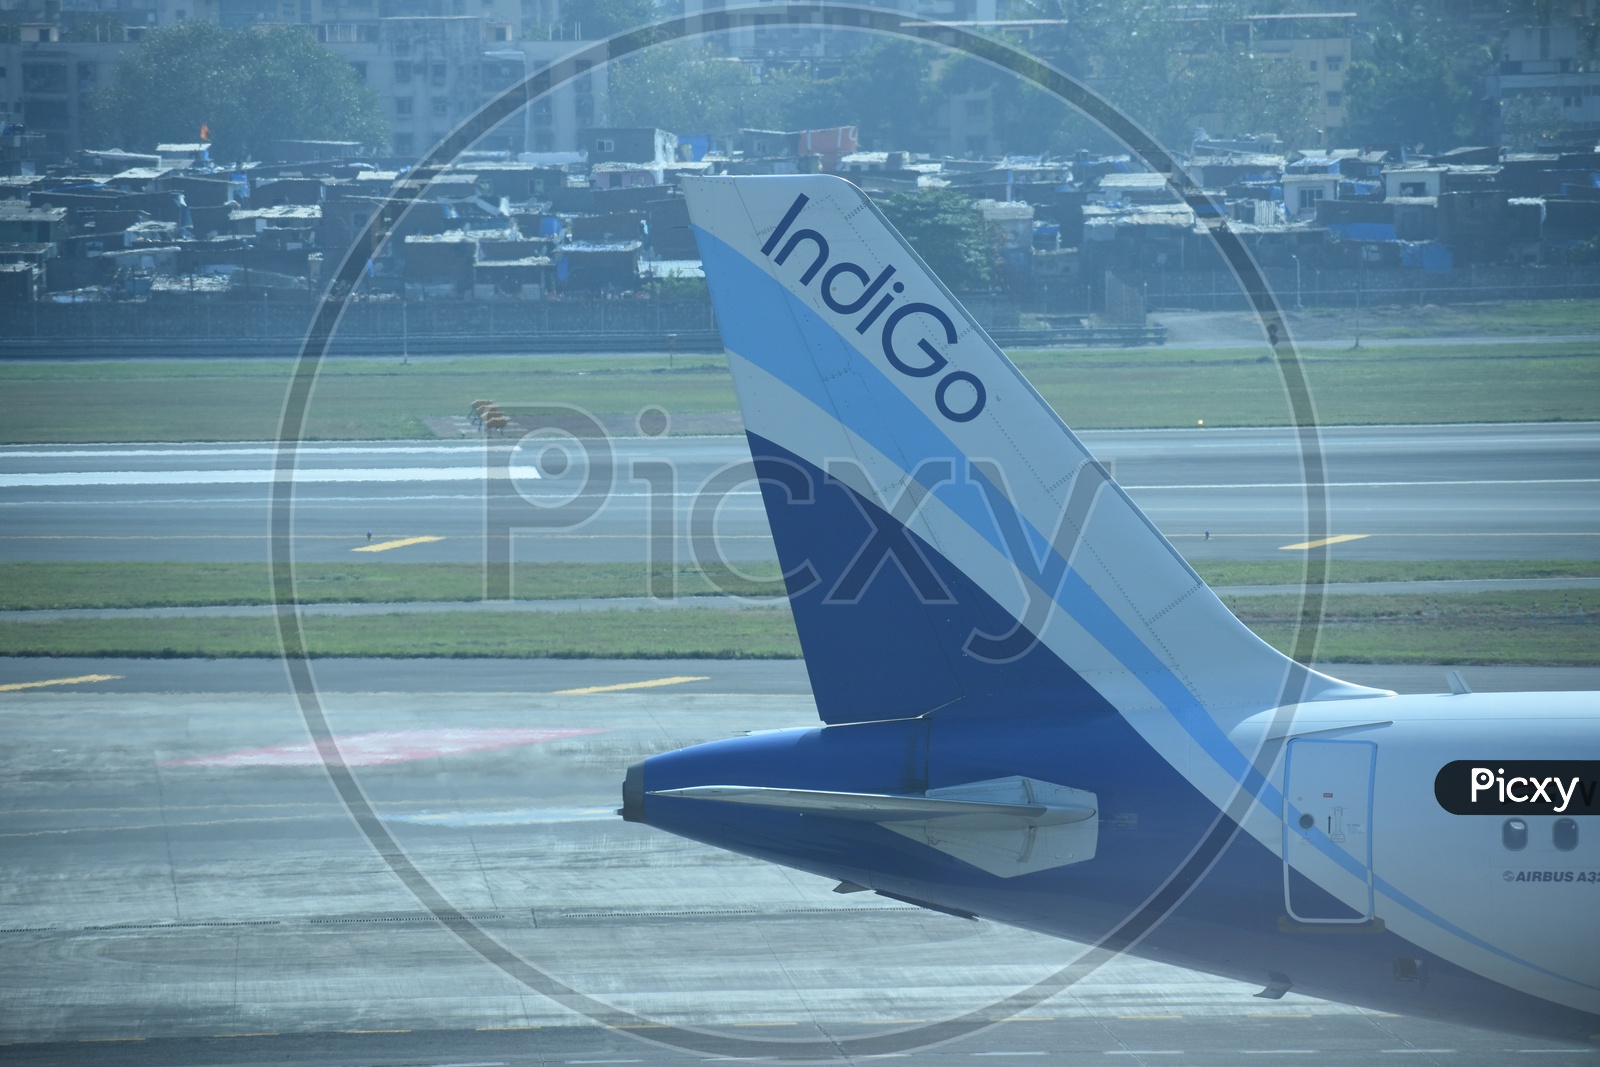 IndiGo A320ceo Tail